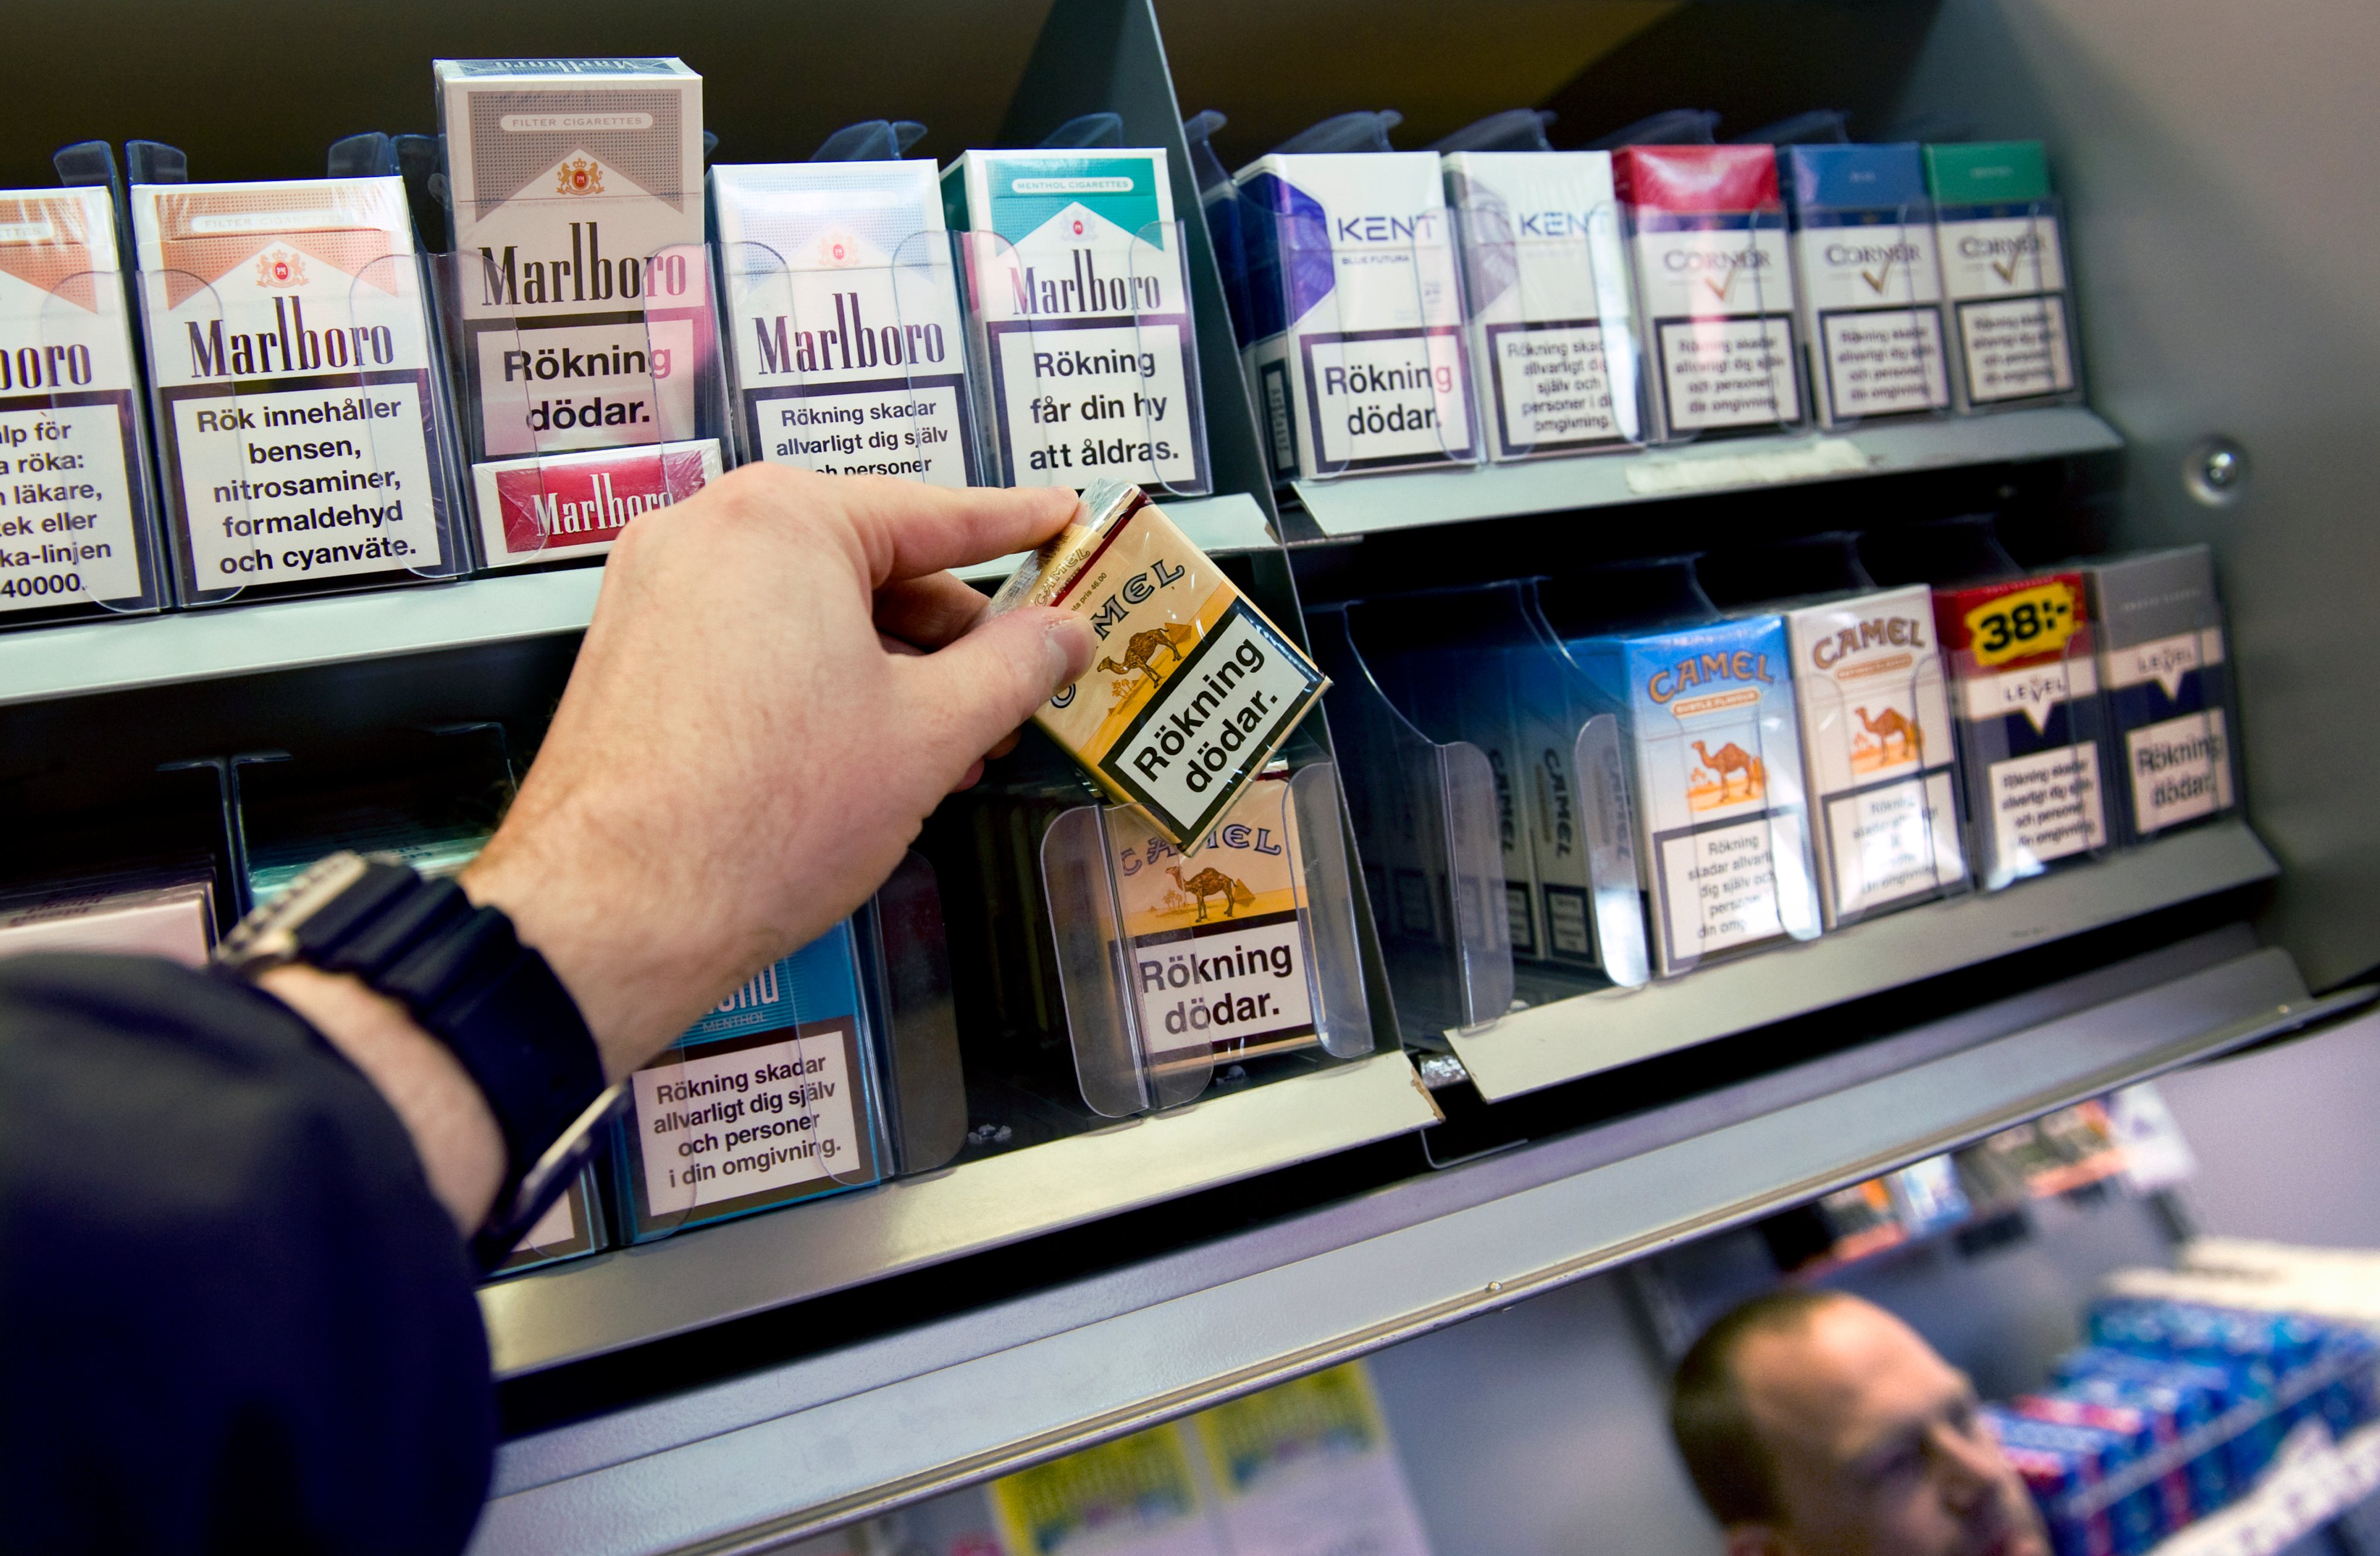 Alliansen, Rökning, Cigaretter, Lagförslag, Riksdagsvalet 2010